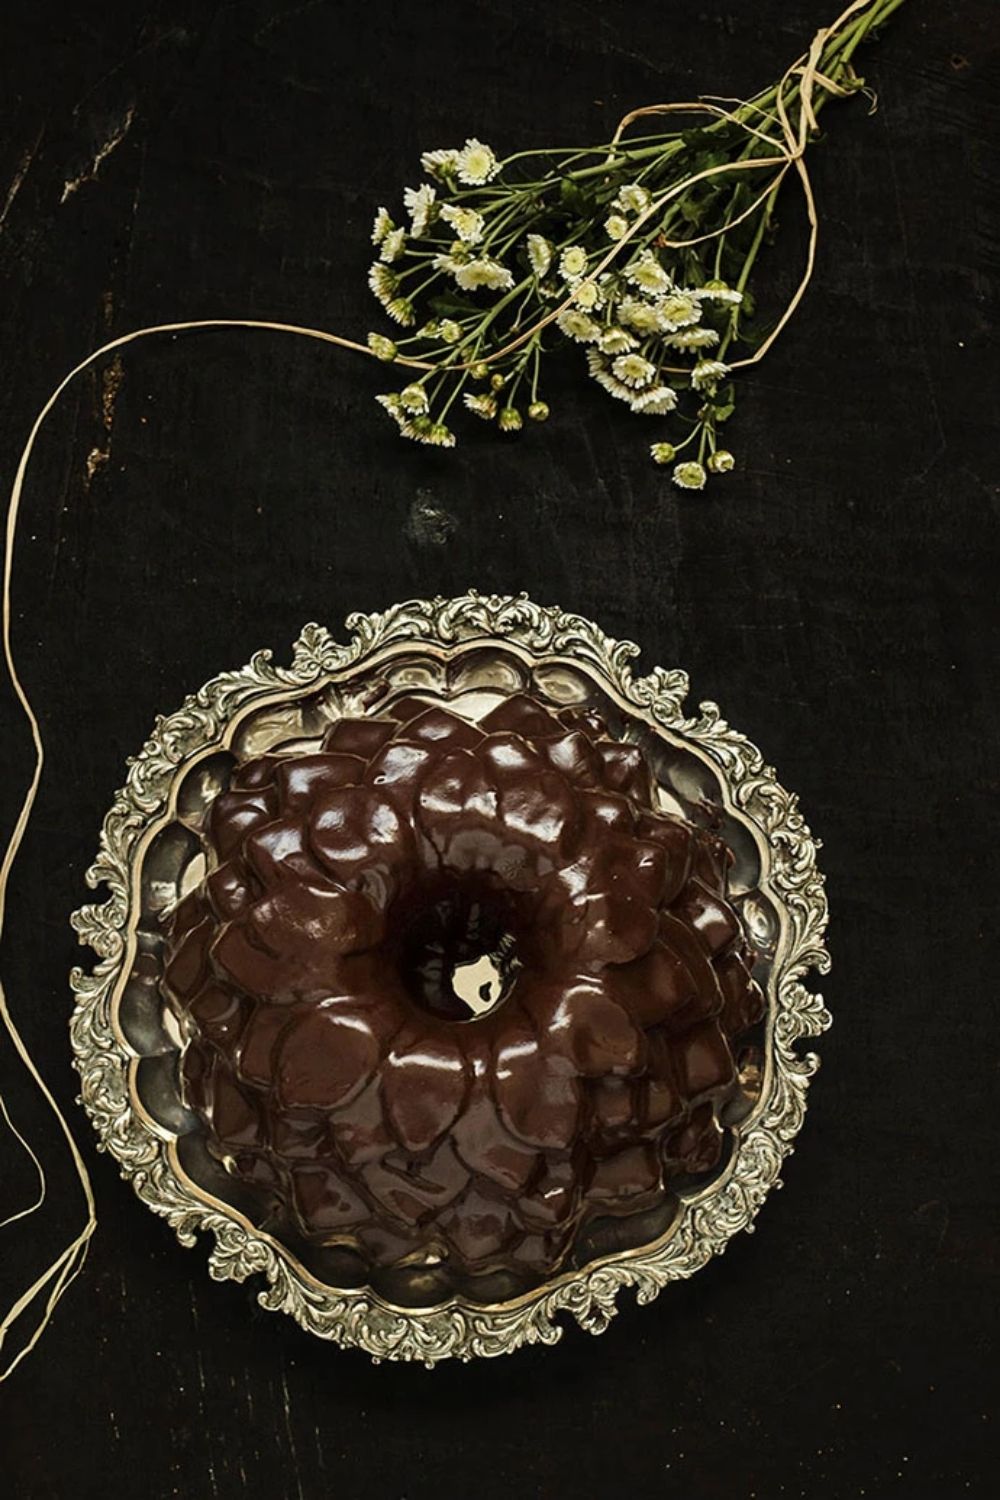 Bundtcake de chocolate con glaseado - El Toque de Inés